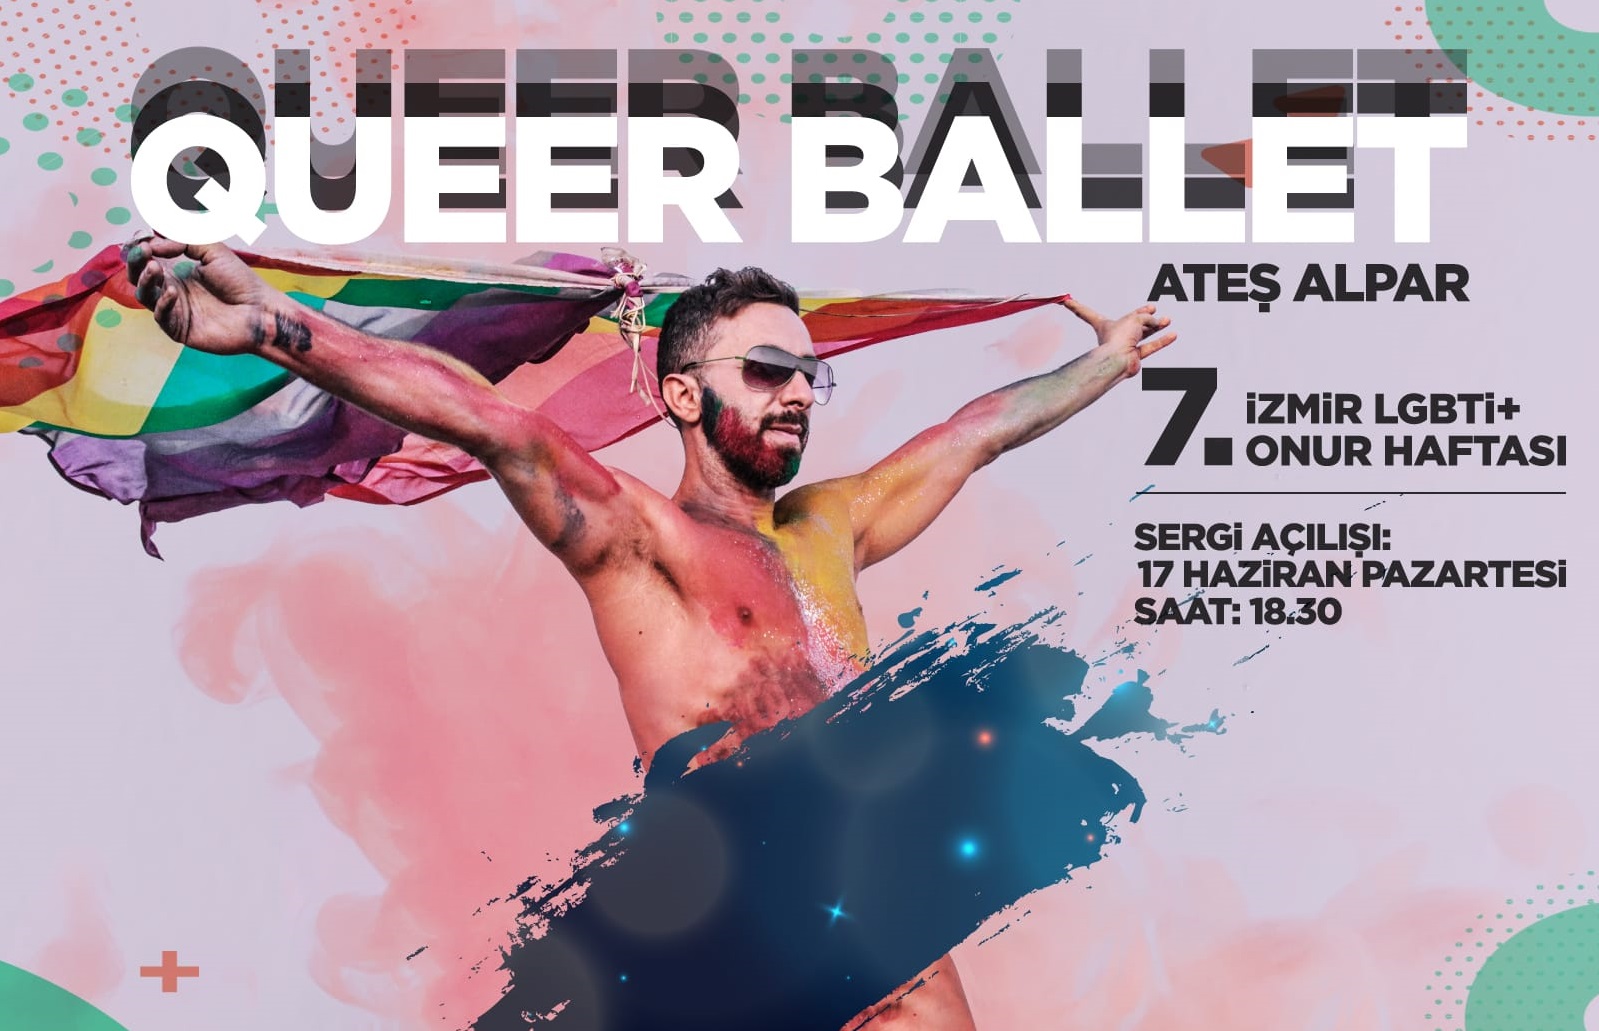 Ateş Alpar’ın “Queer Ballet” sergisi 7. İzmir LGBTİ+ Onur Haftası’nda | Kaos GL - LGBTİ+ Haber Portalı Haber